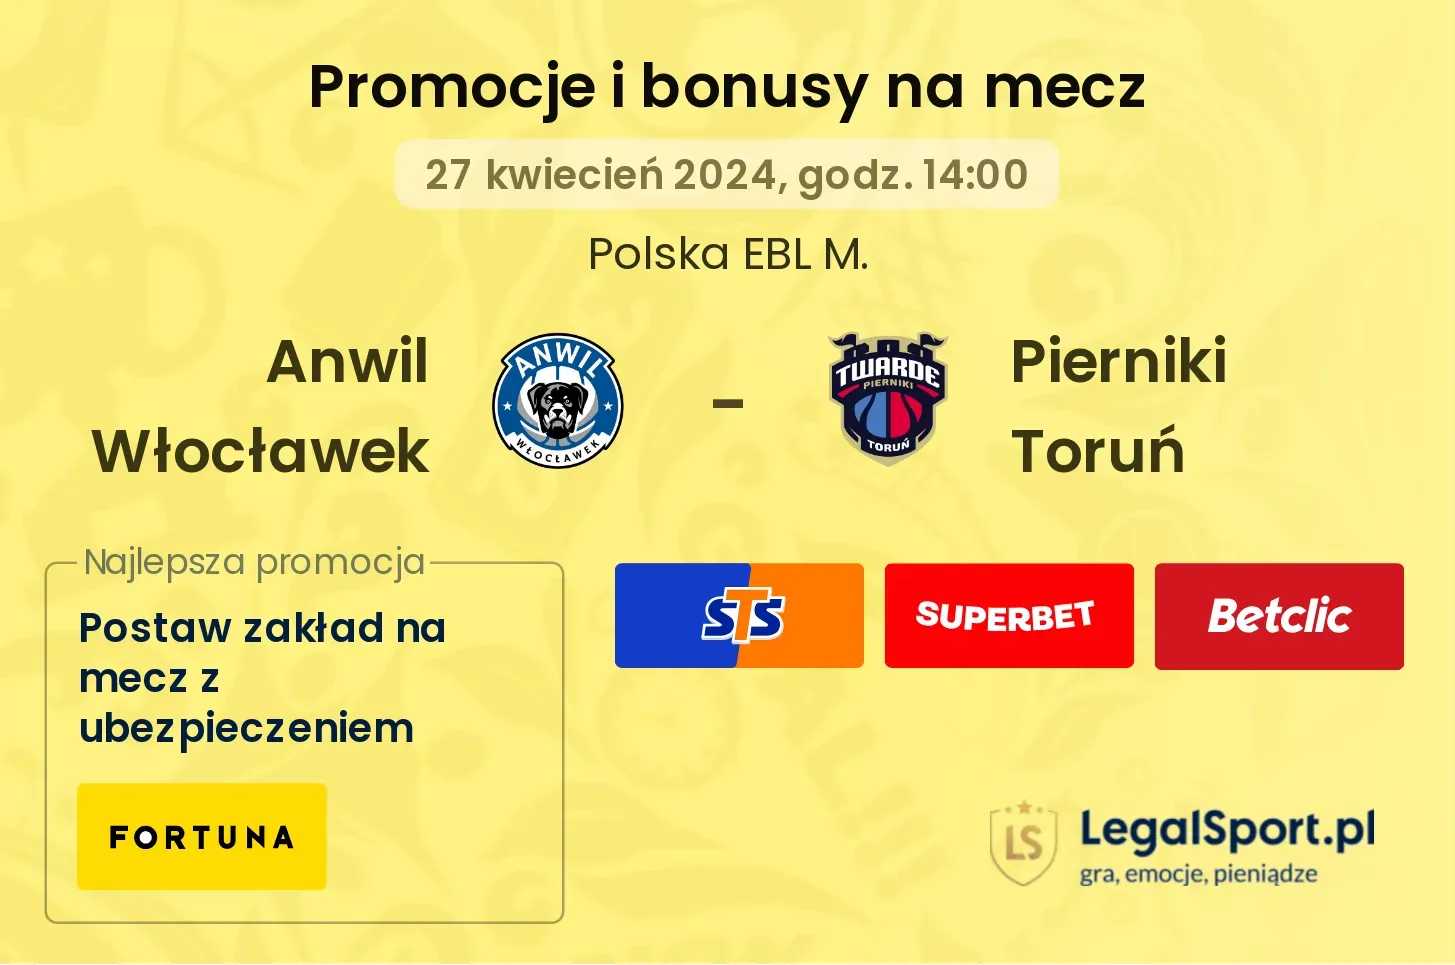 Anwil Włocławek - Pierniki Toruń promocje bonusy na mecz